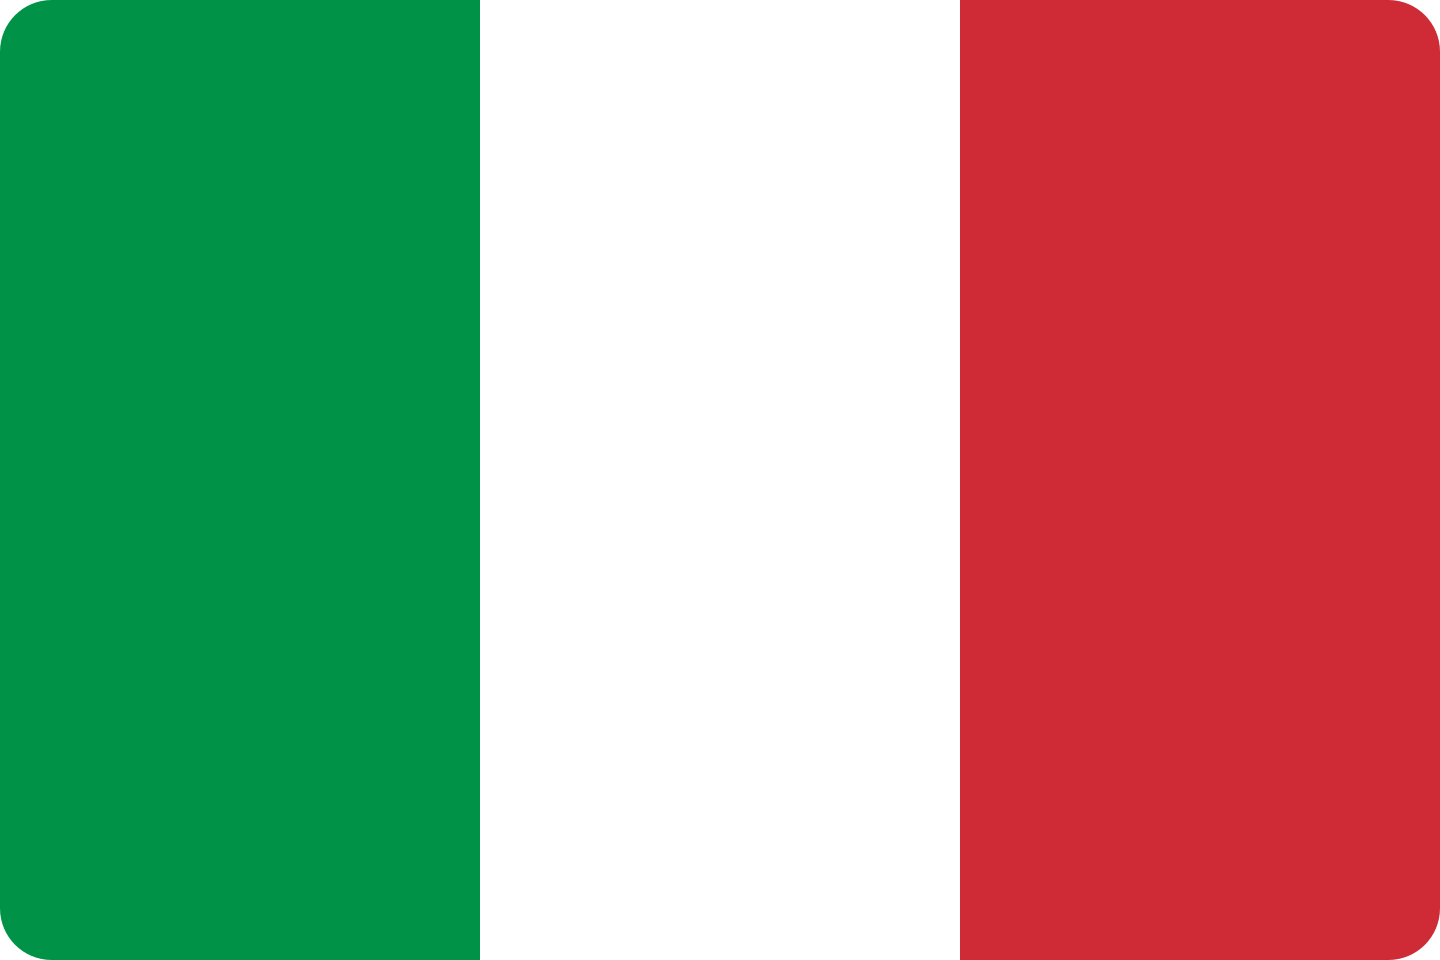 Bandeira da Itália.